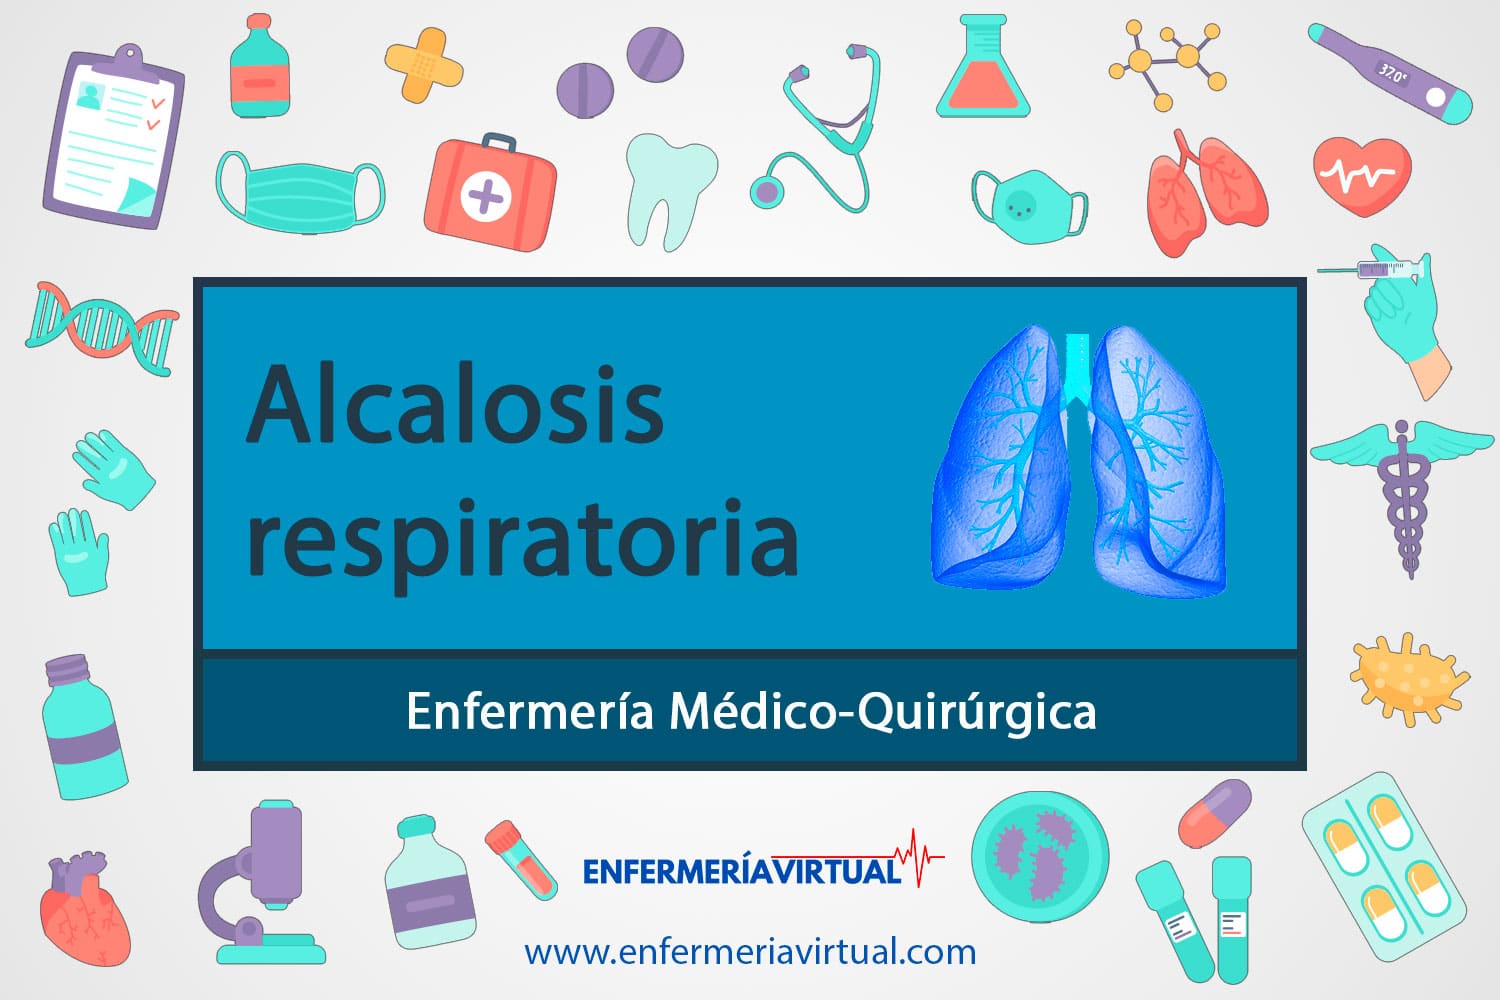 Alcalosis respiratoria